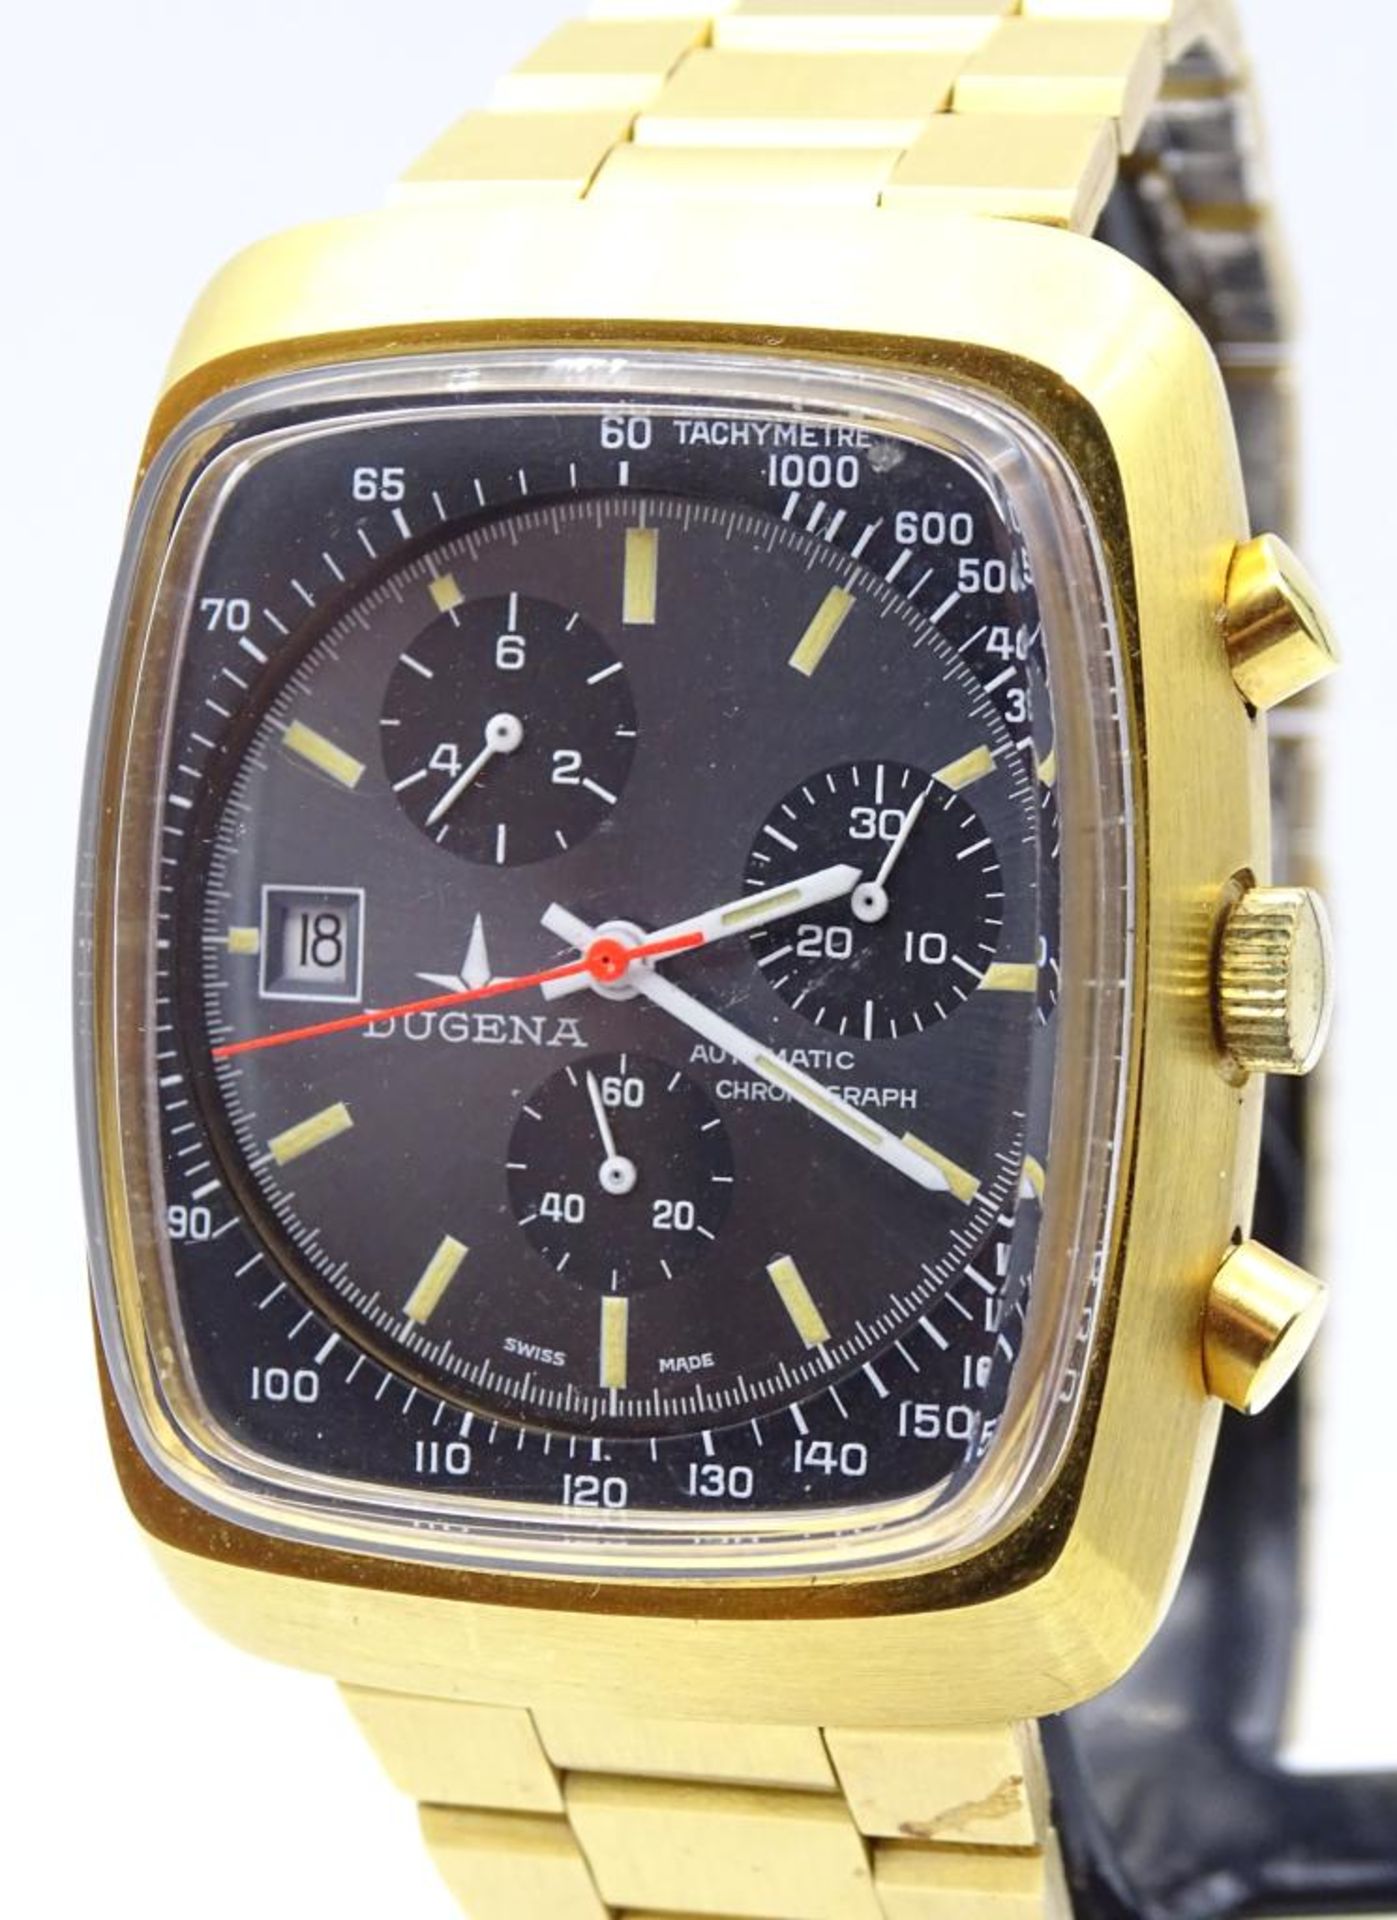 Vintage HAU "Dugena",automatic-chronograph,Werk läuft, swiss made, Tachymeter,vergoldet, - Bild 4 aus 7